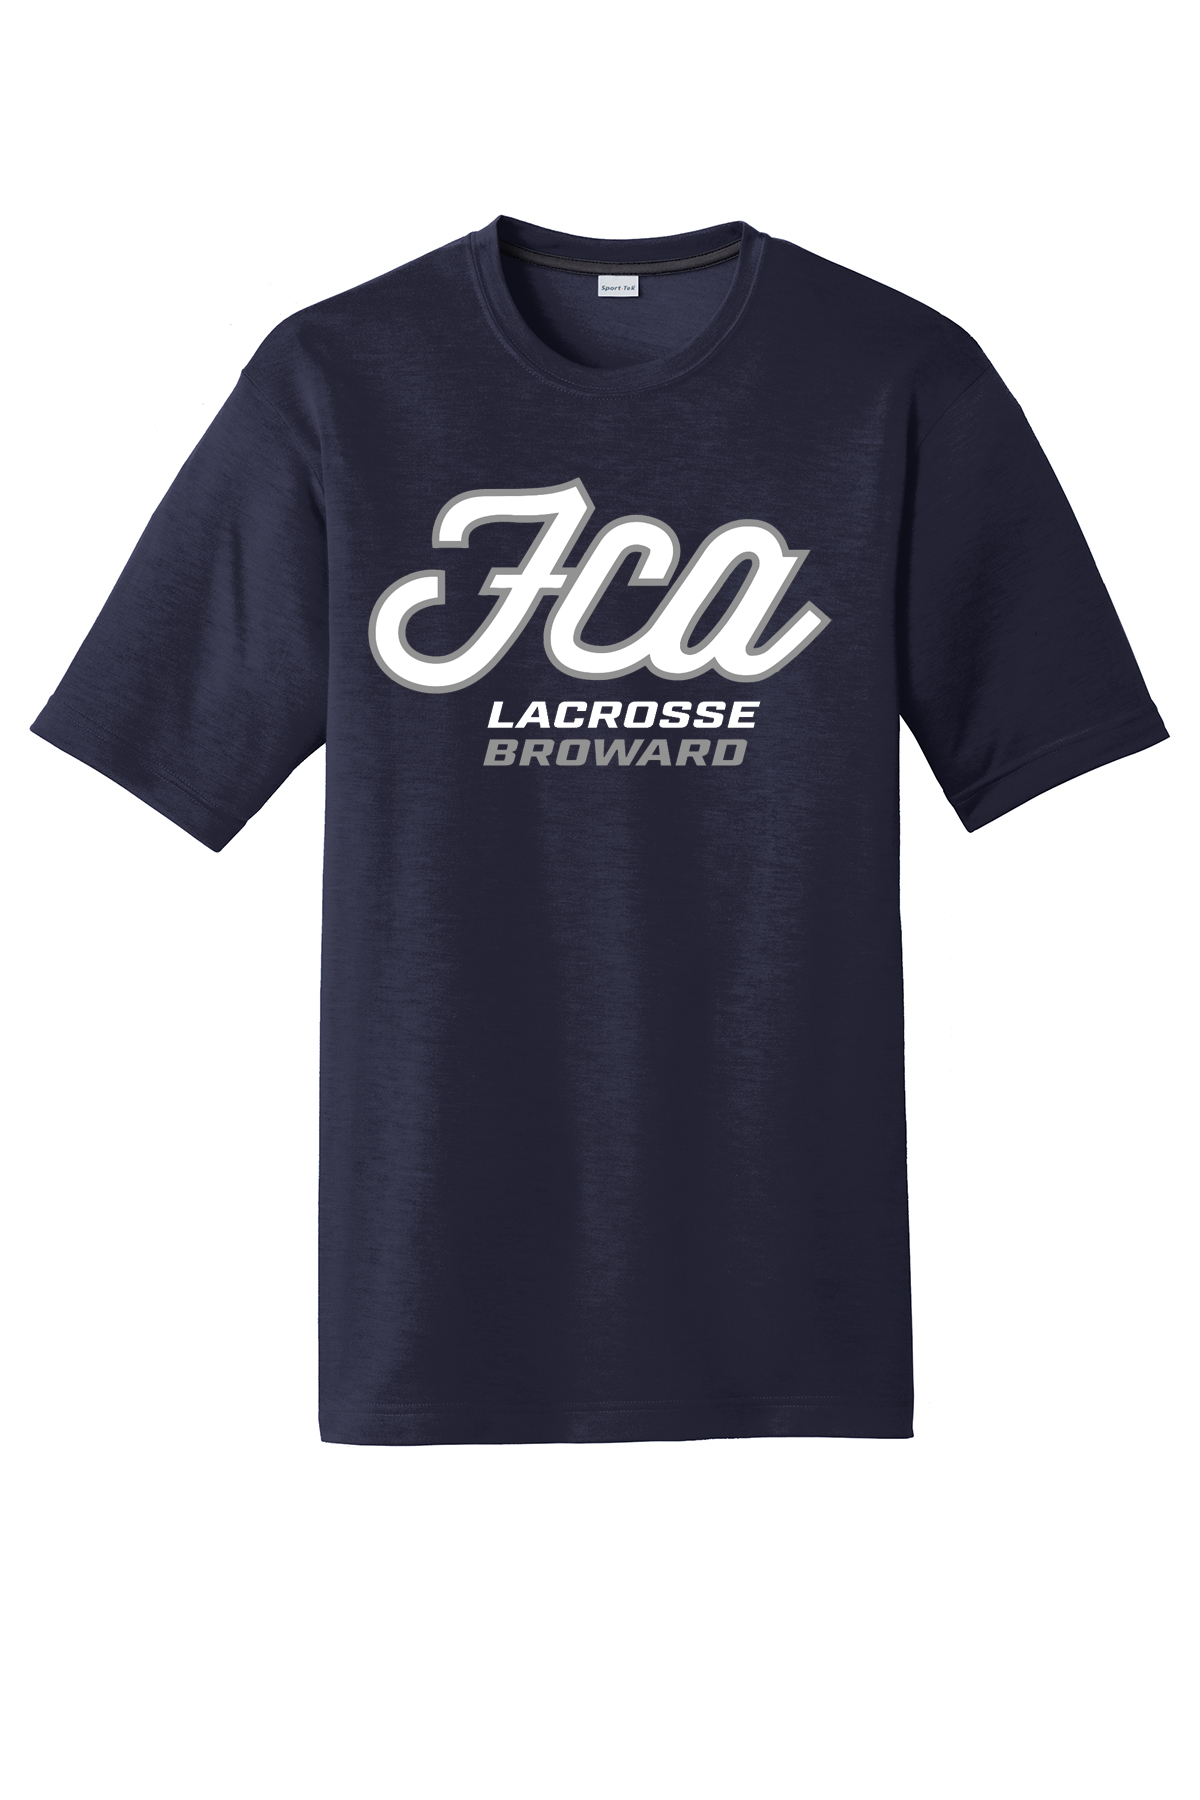 FCA Lacrosse CottonTouch Performance T-Shirt